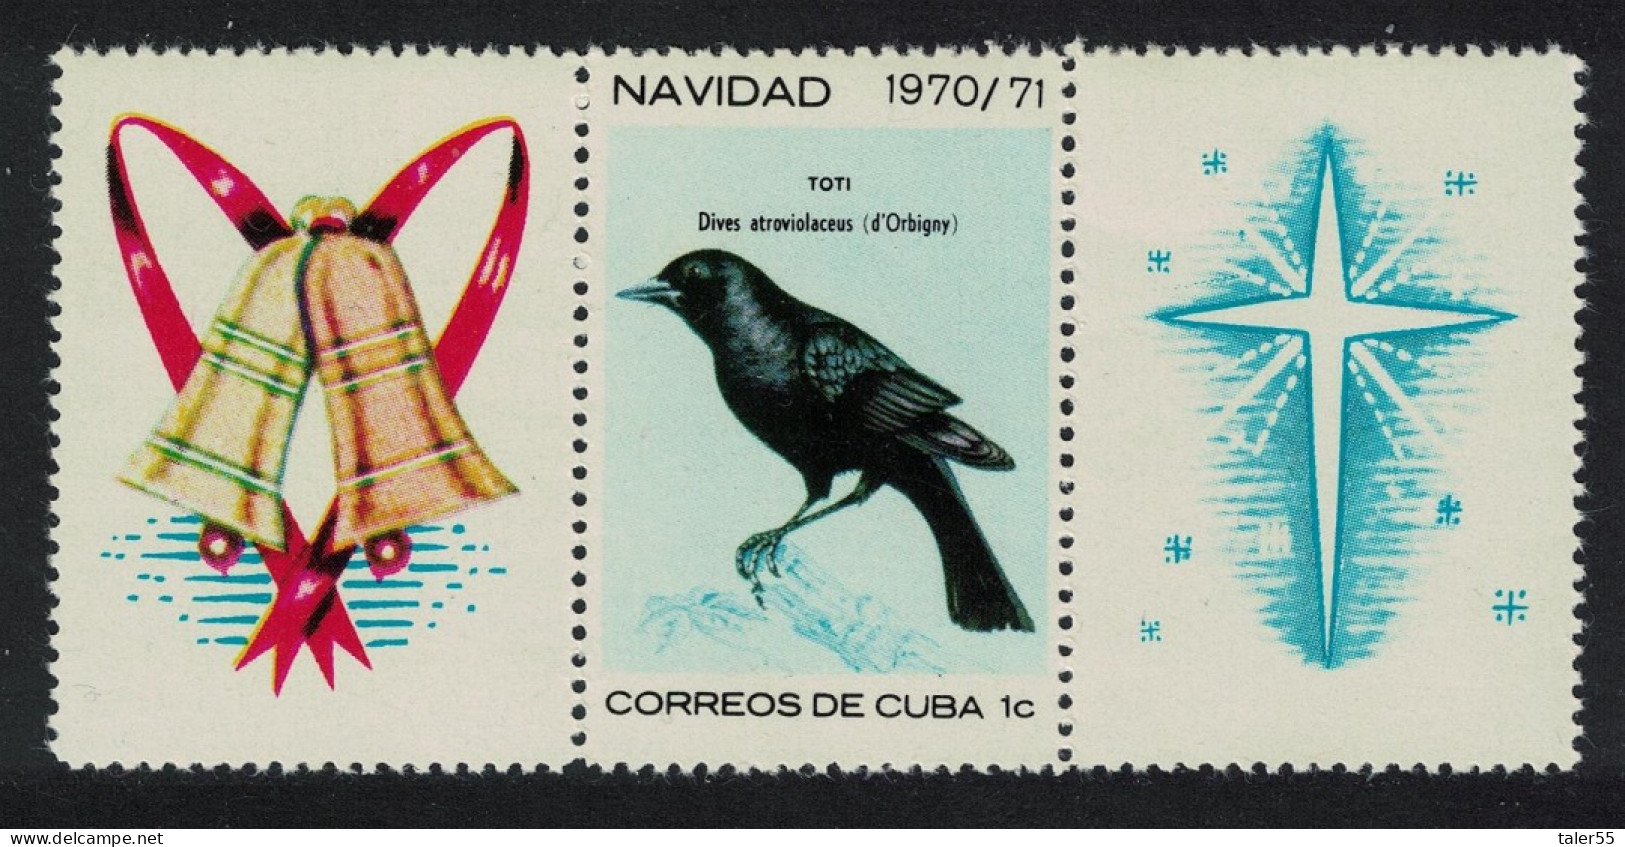 Caribic Blackbird Christmas Birds 2 Labels 1970 MNH SG#1810 - Neufs